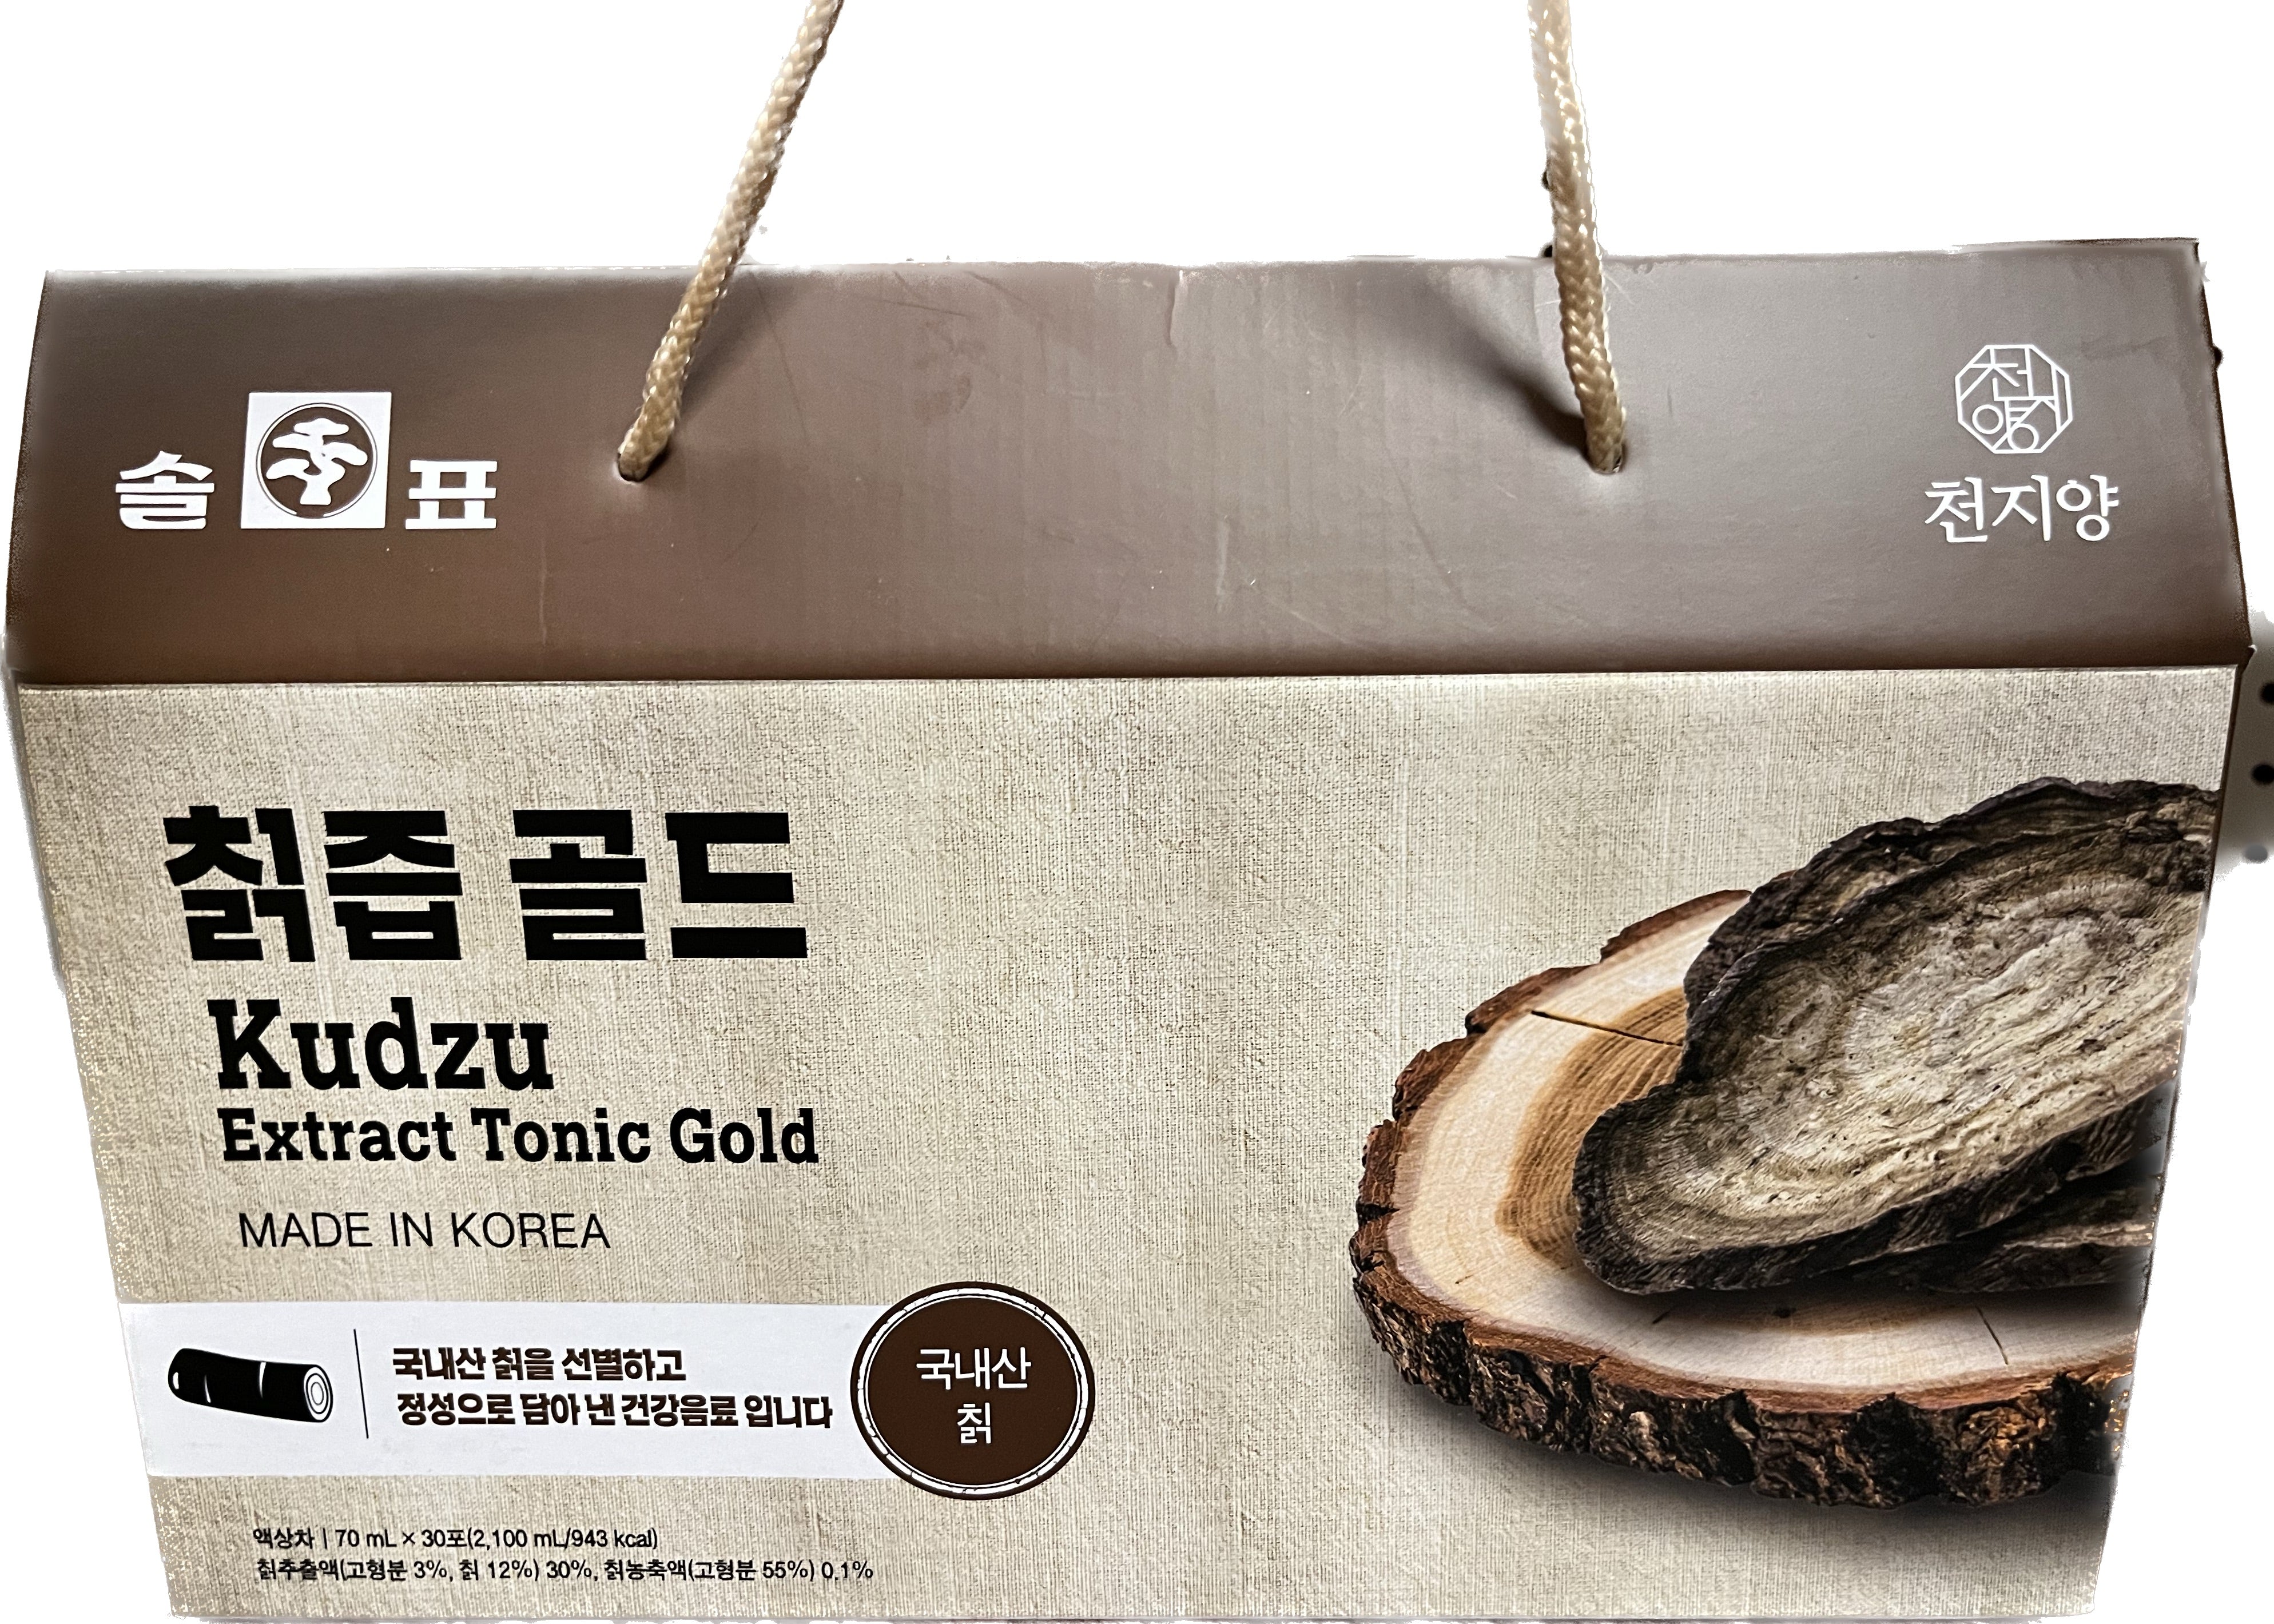 Pine Tree Brand- Kudzu Extract Tonic Gold 70mL x 30 - 0